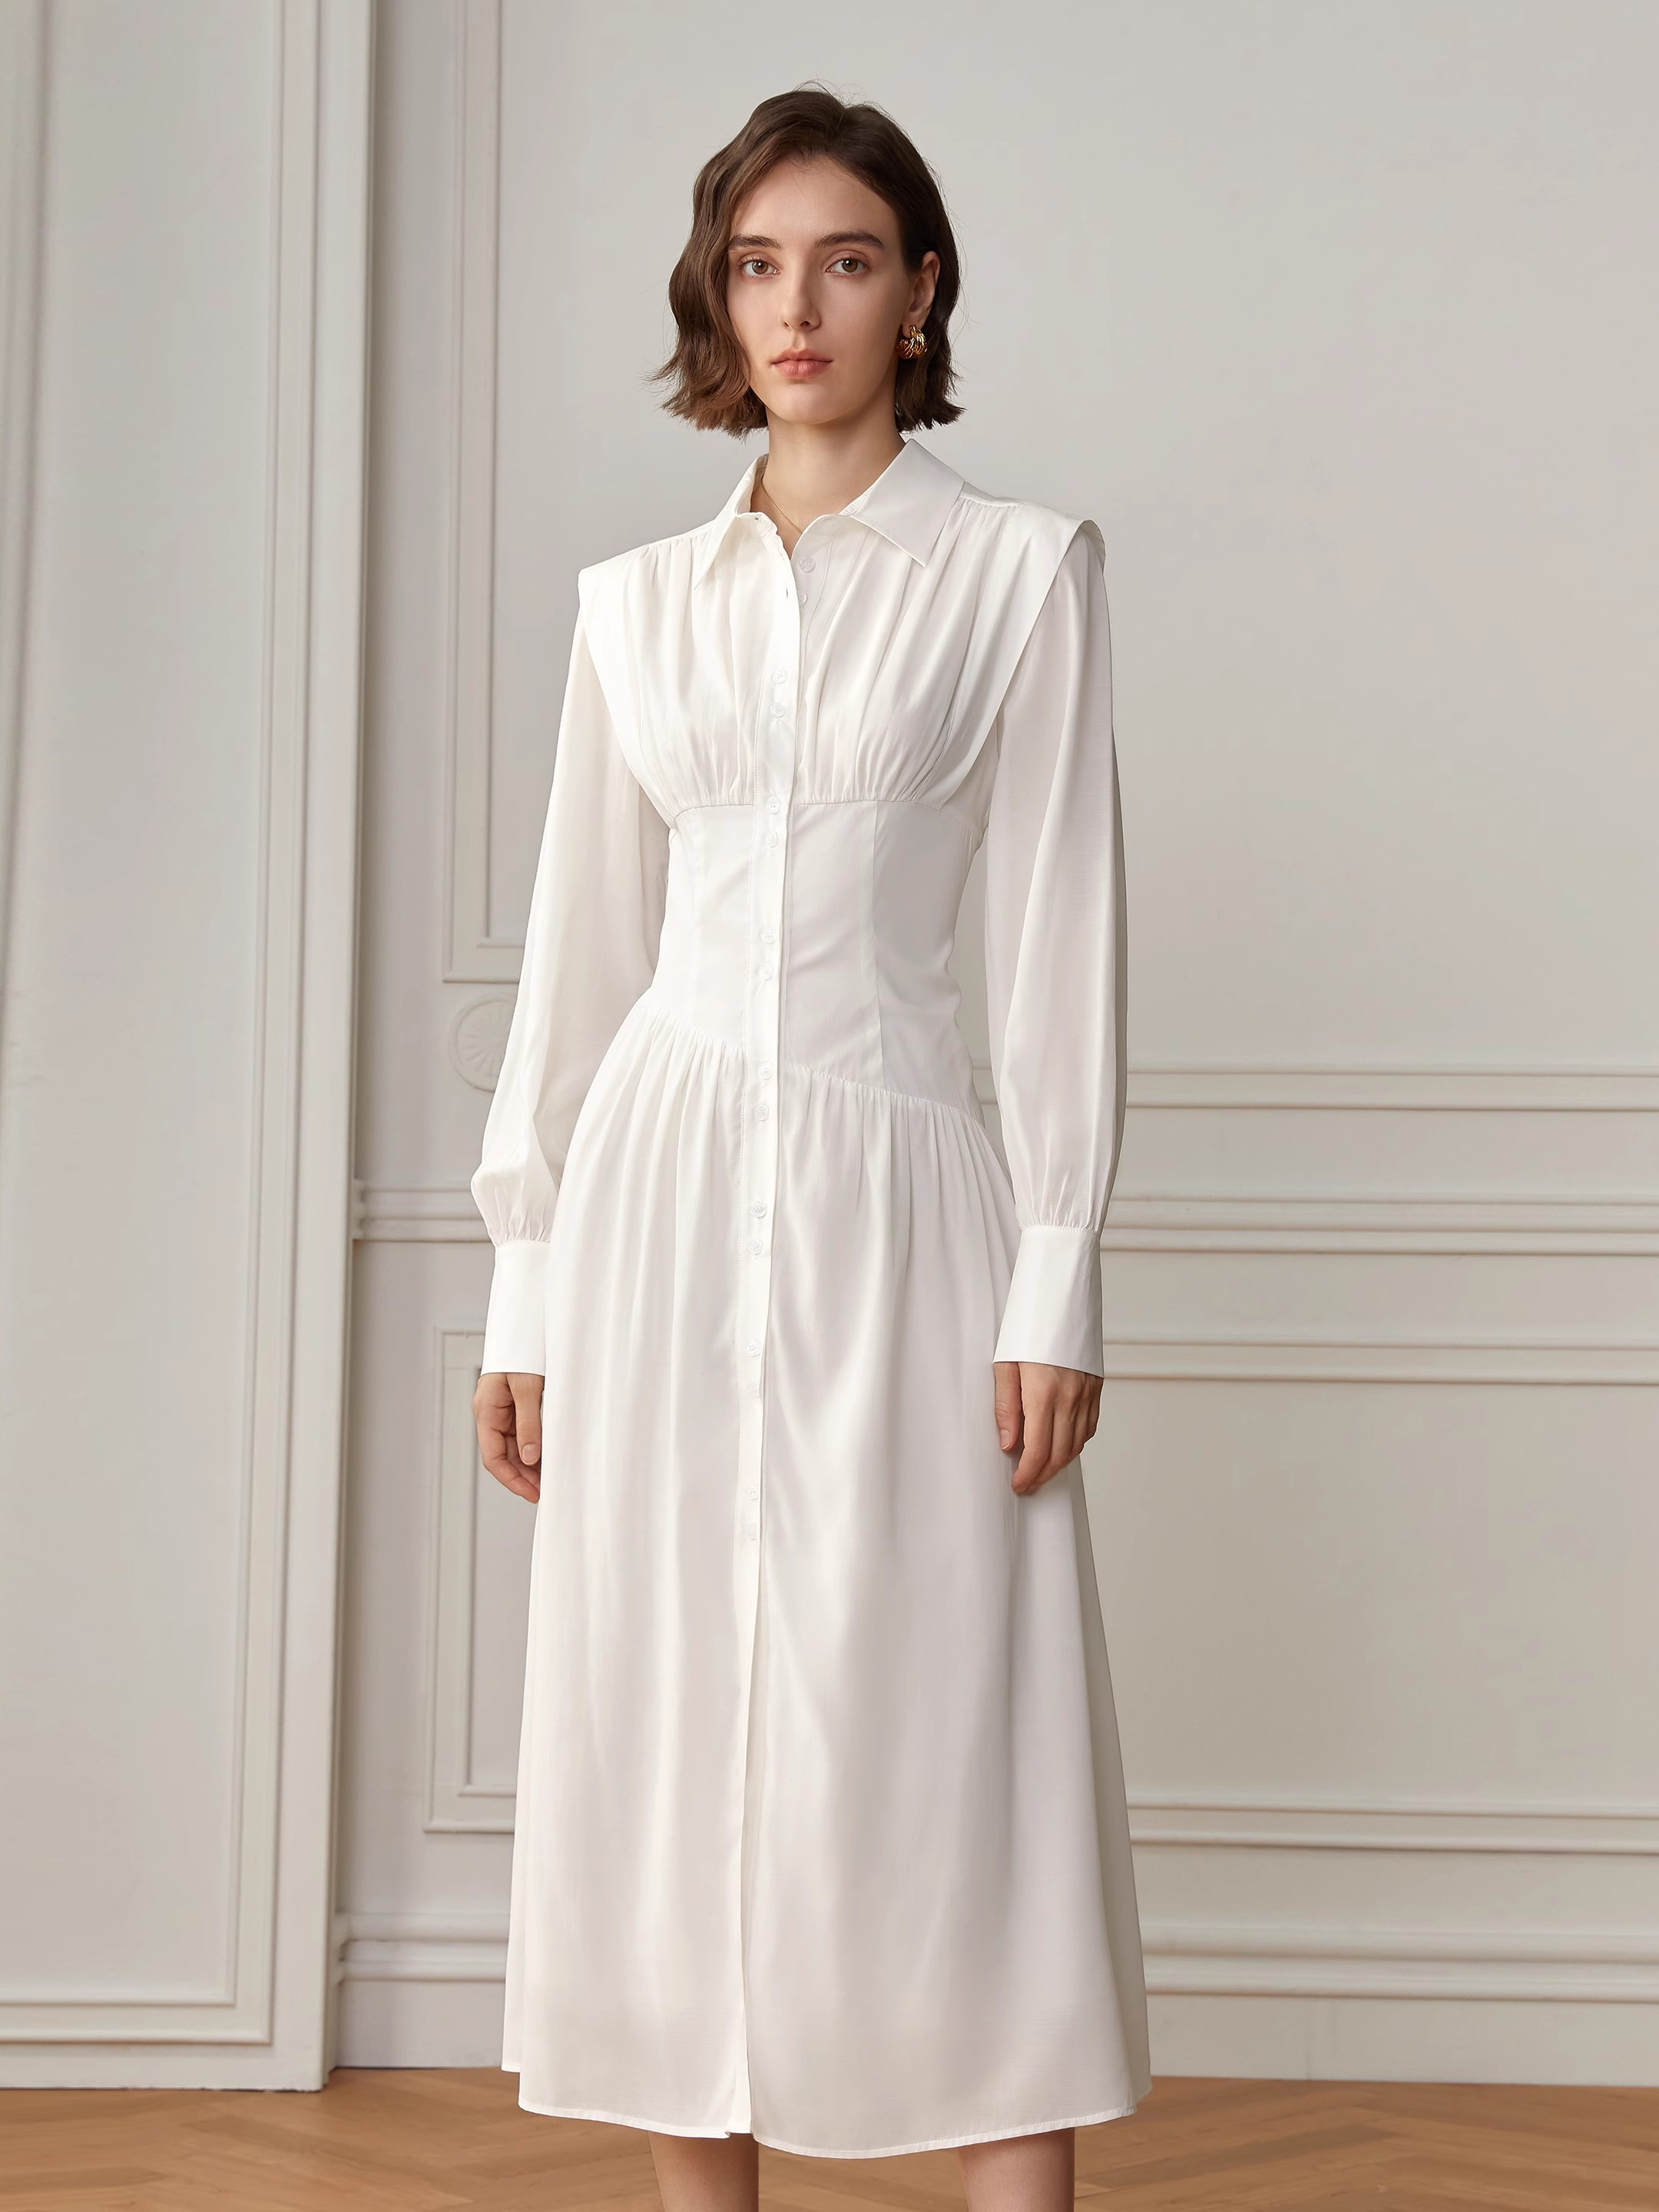 Shirt Custom White Dress Design For Ladies (4)